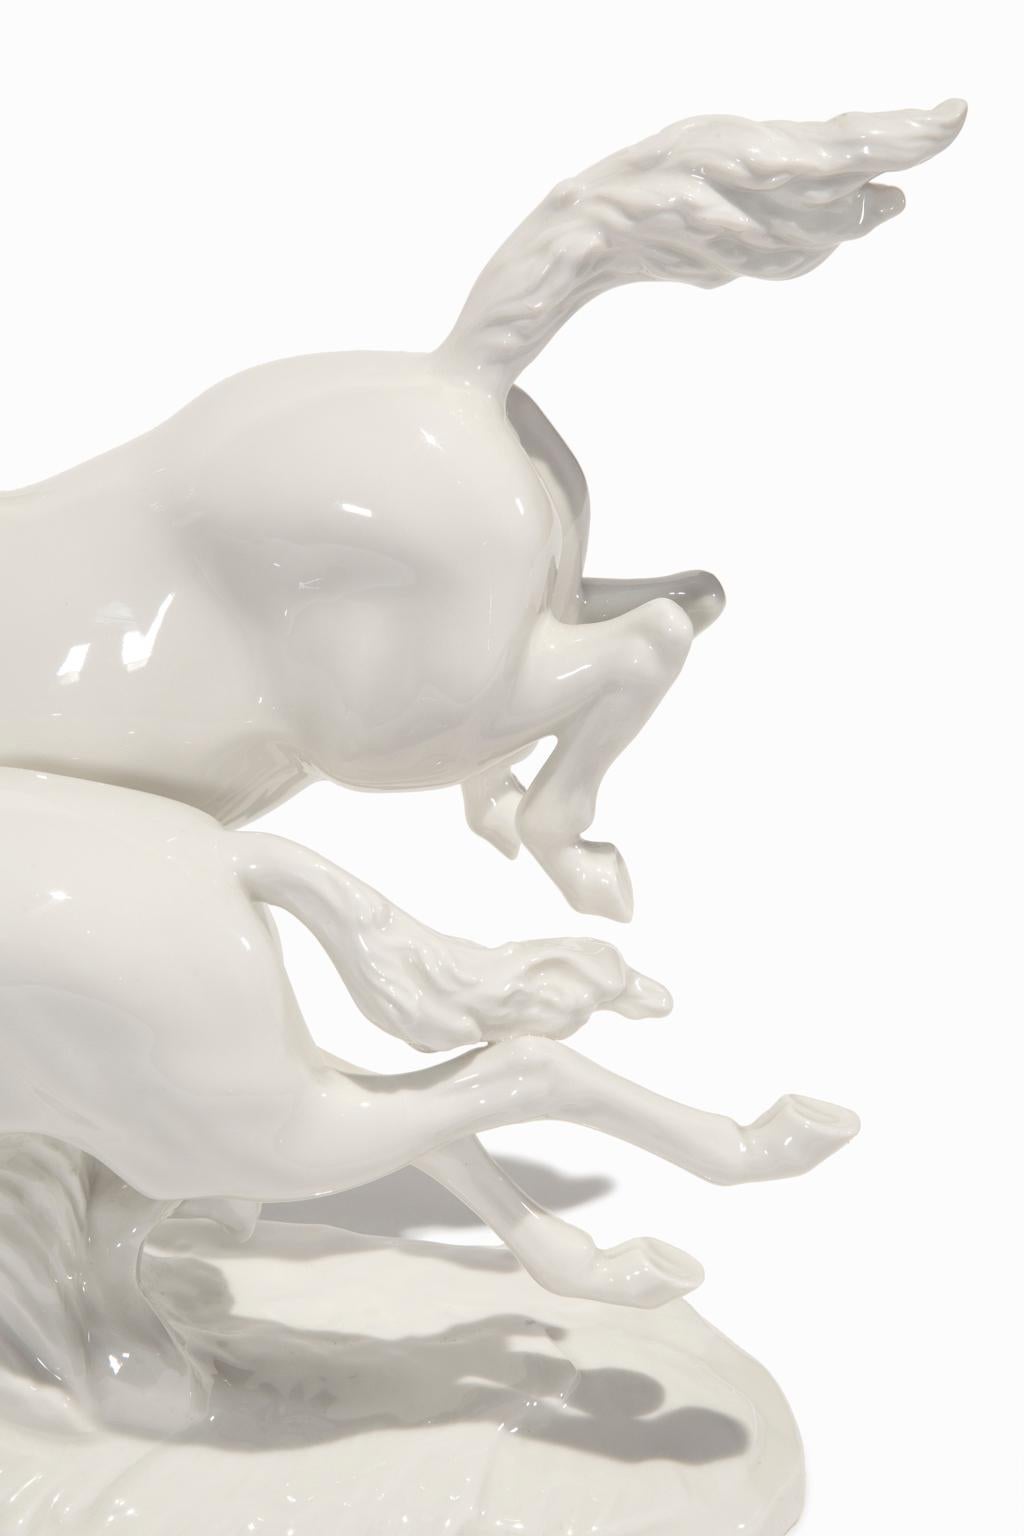 « In Freiheit (In Freedom) », chevaux en porcelaine blanche - Expressionniste Sculpture par Hutschenreuther